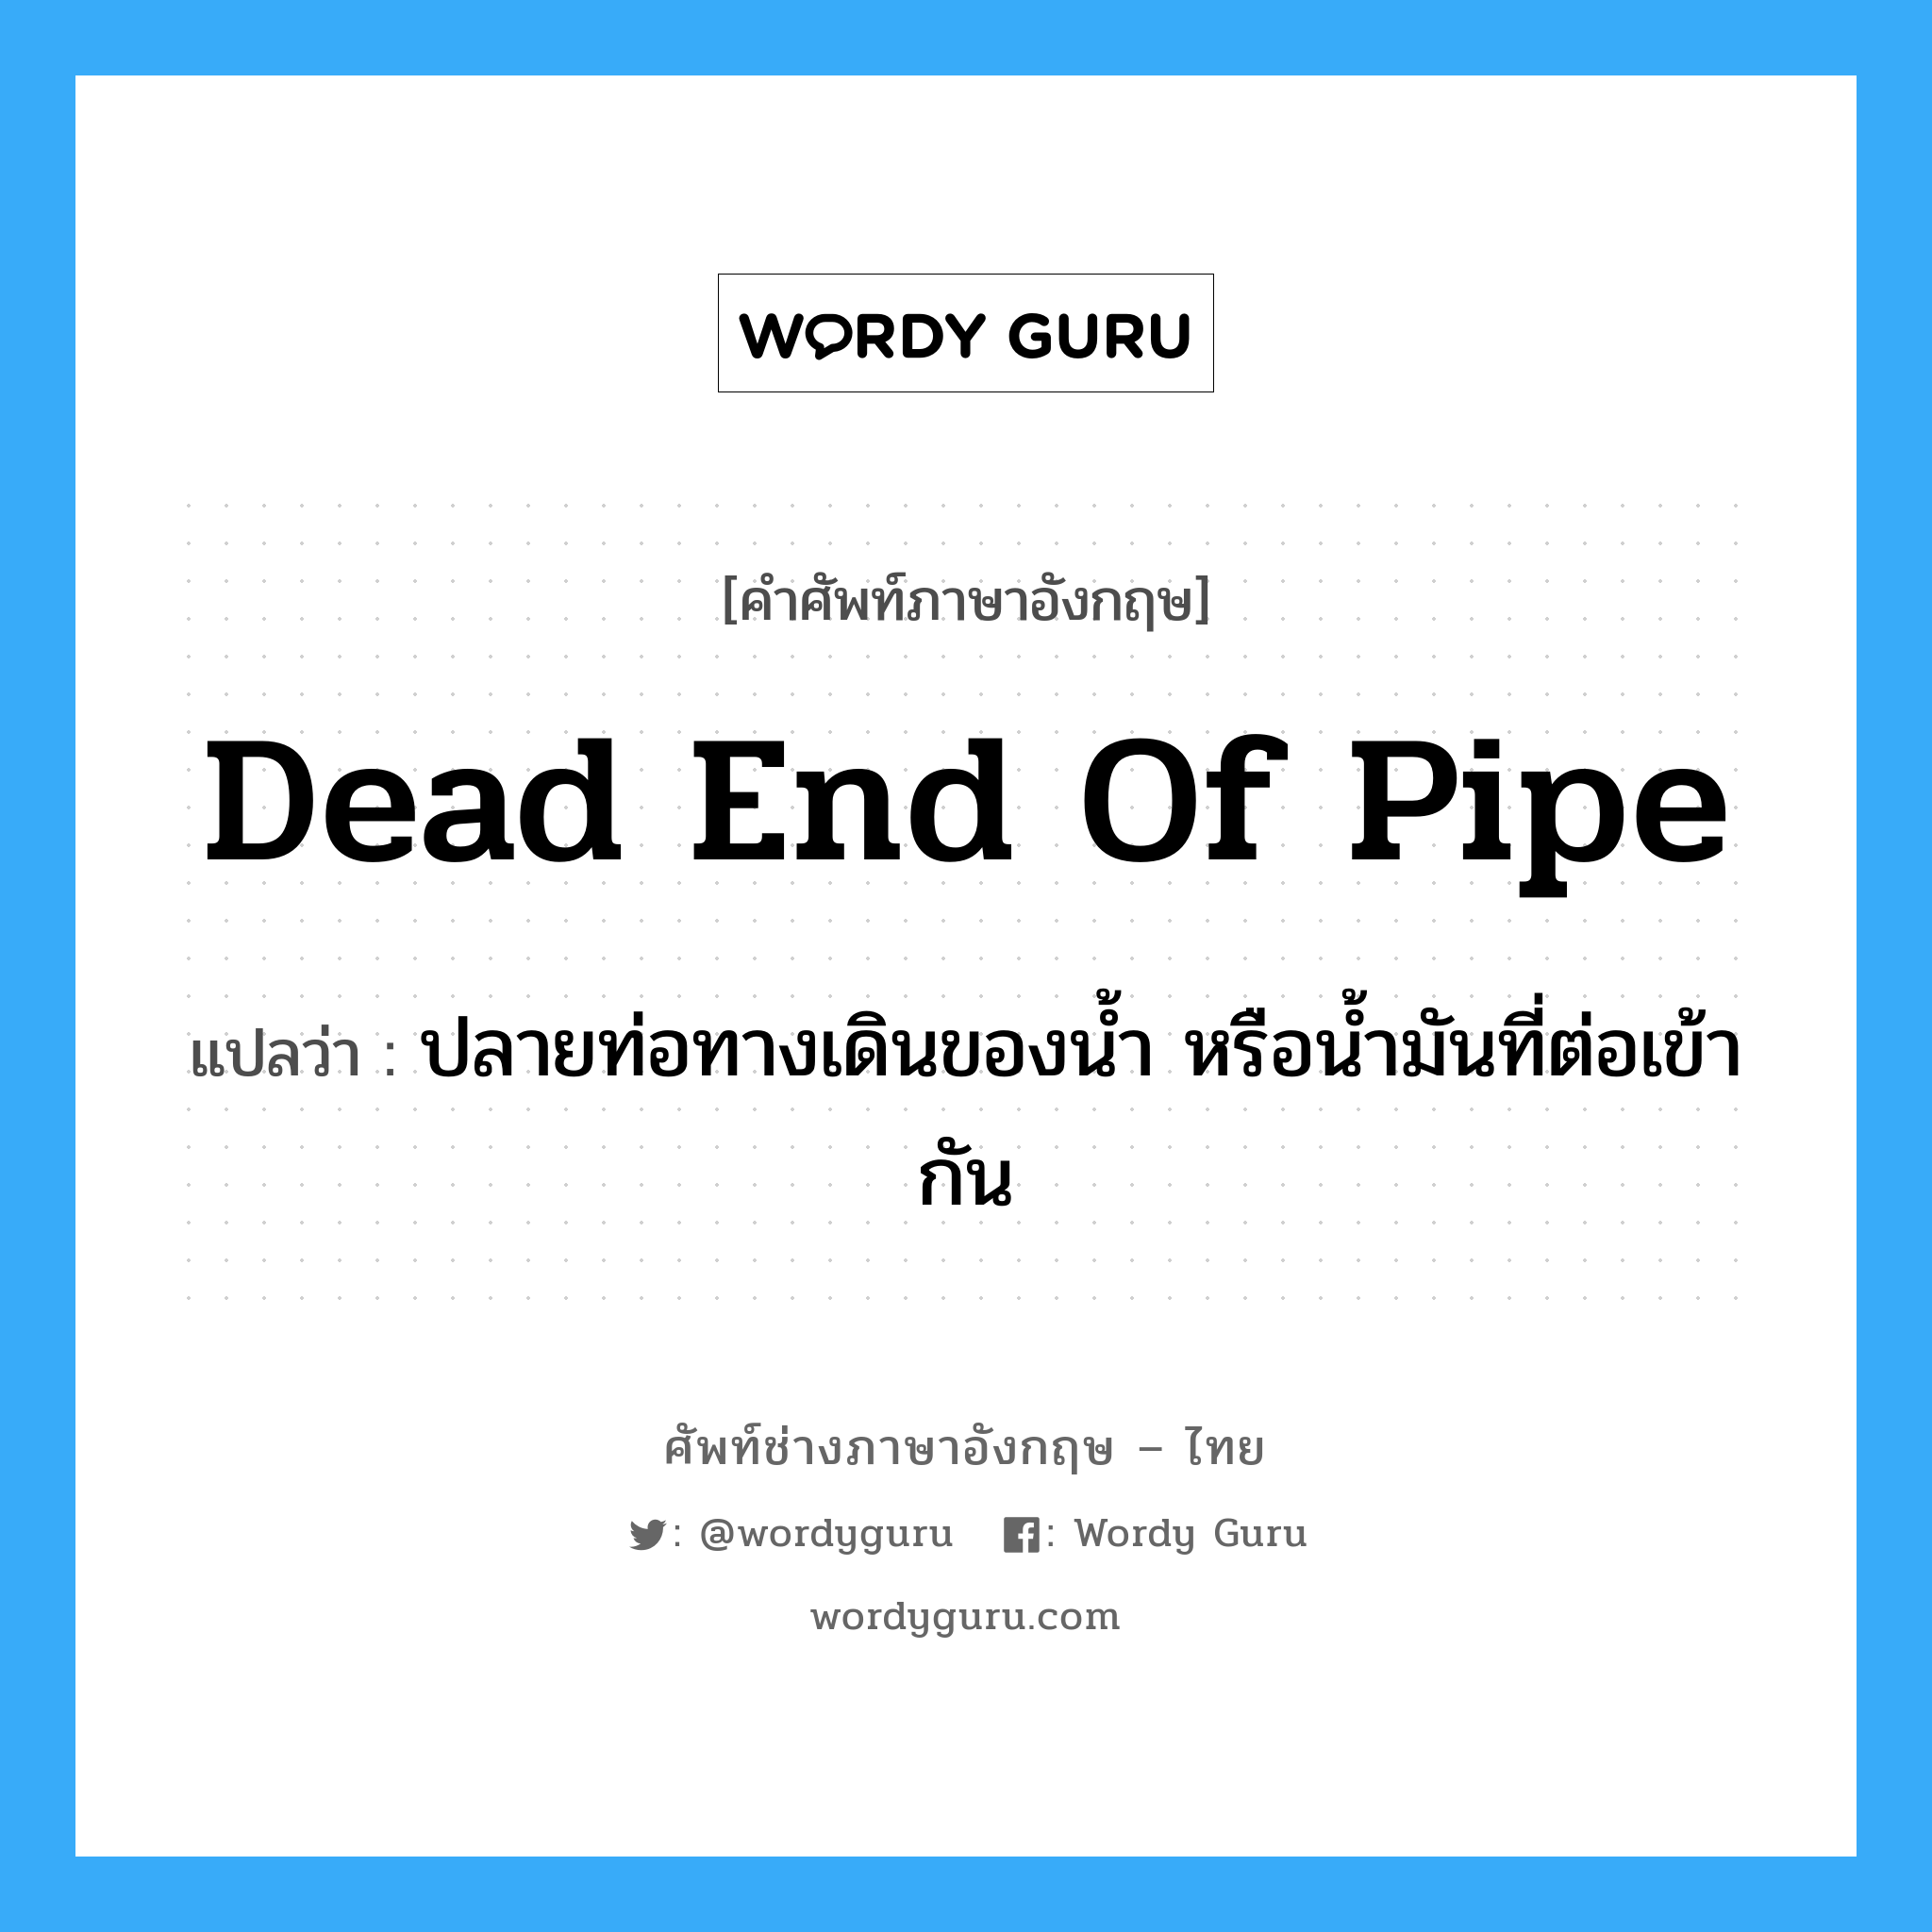 dead end of pipe แปลว่า?, คำศัพท์ช่างภาษาอังกฤษ - ไทย dead end of pipe คำศัพท์ภาษาอังกฤษ dead end of pipe แปลว่า ปลายท่อทางเดินของน้ำ หรือน้ำมันที่ต่อเข้ากัน